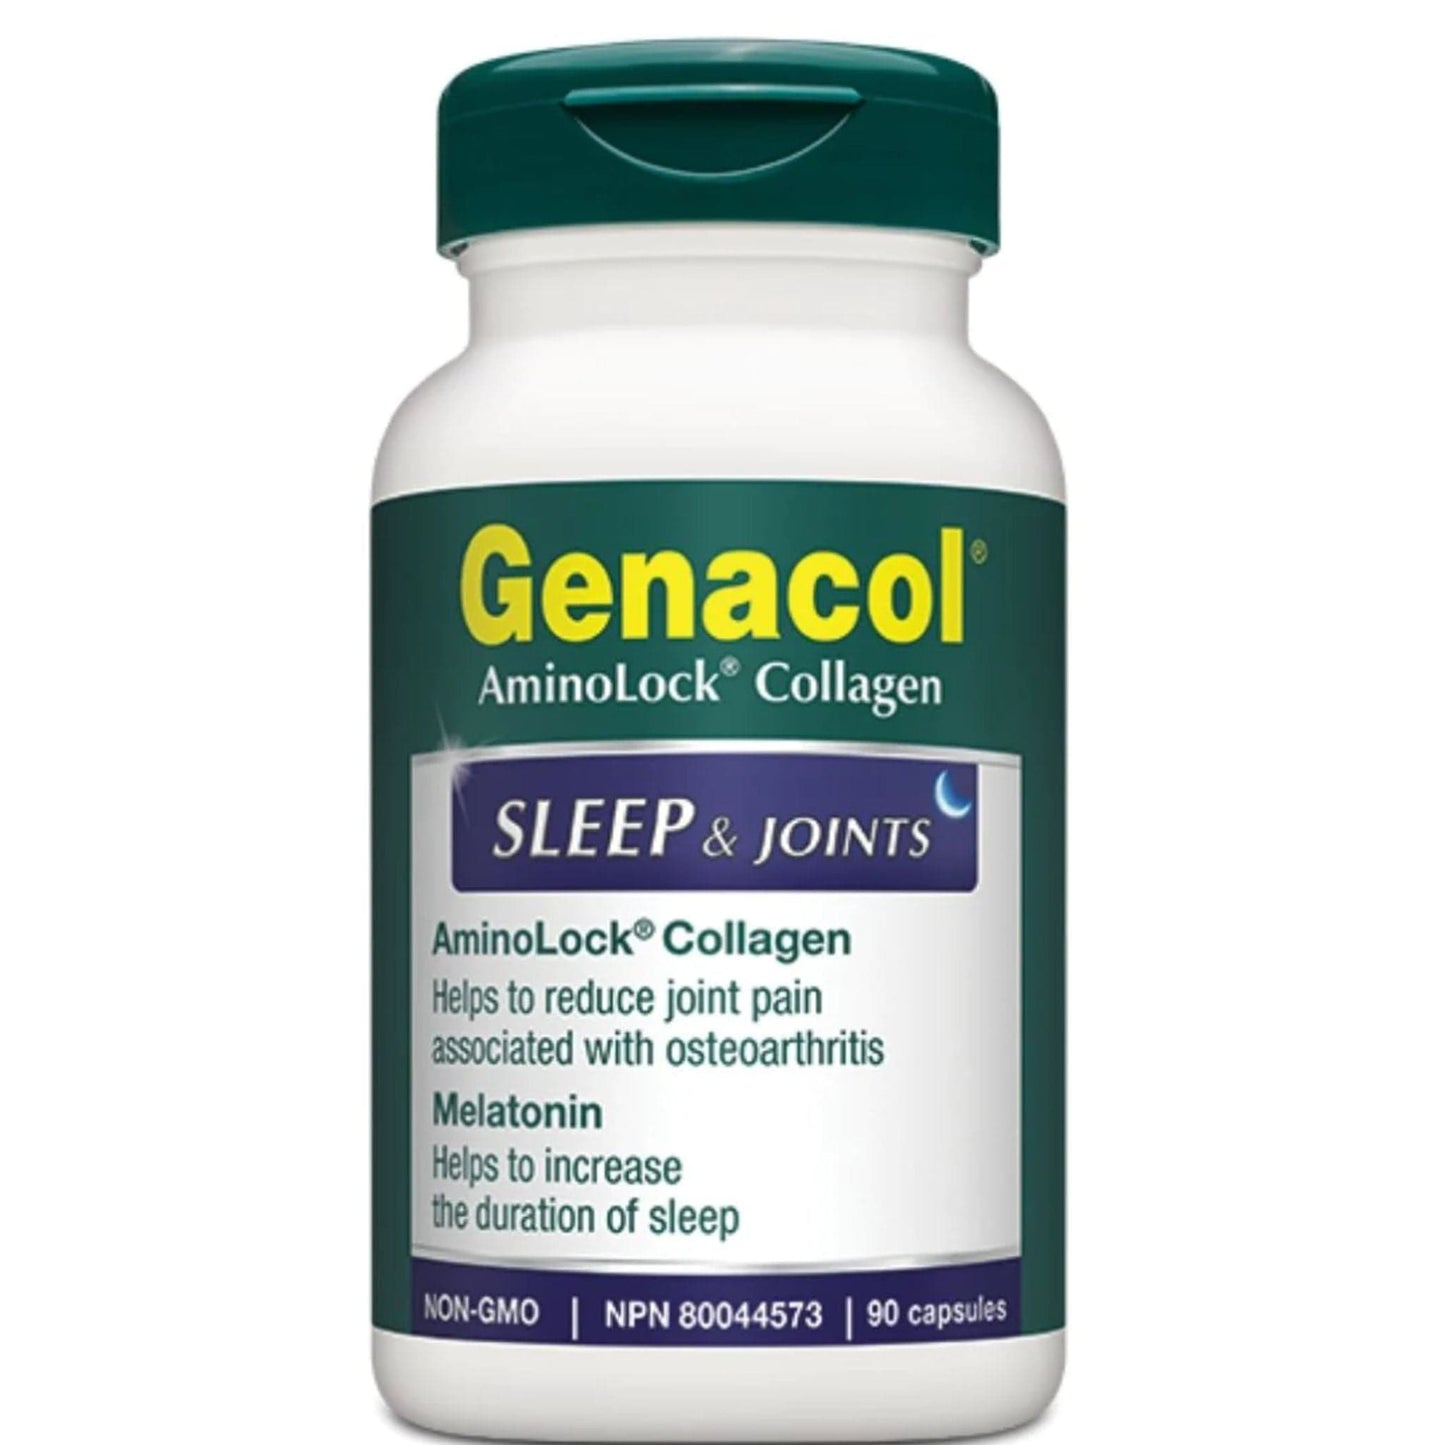 Genacol Aminolock Collagen Sleep and Joints